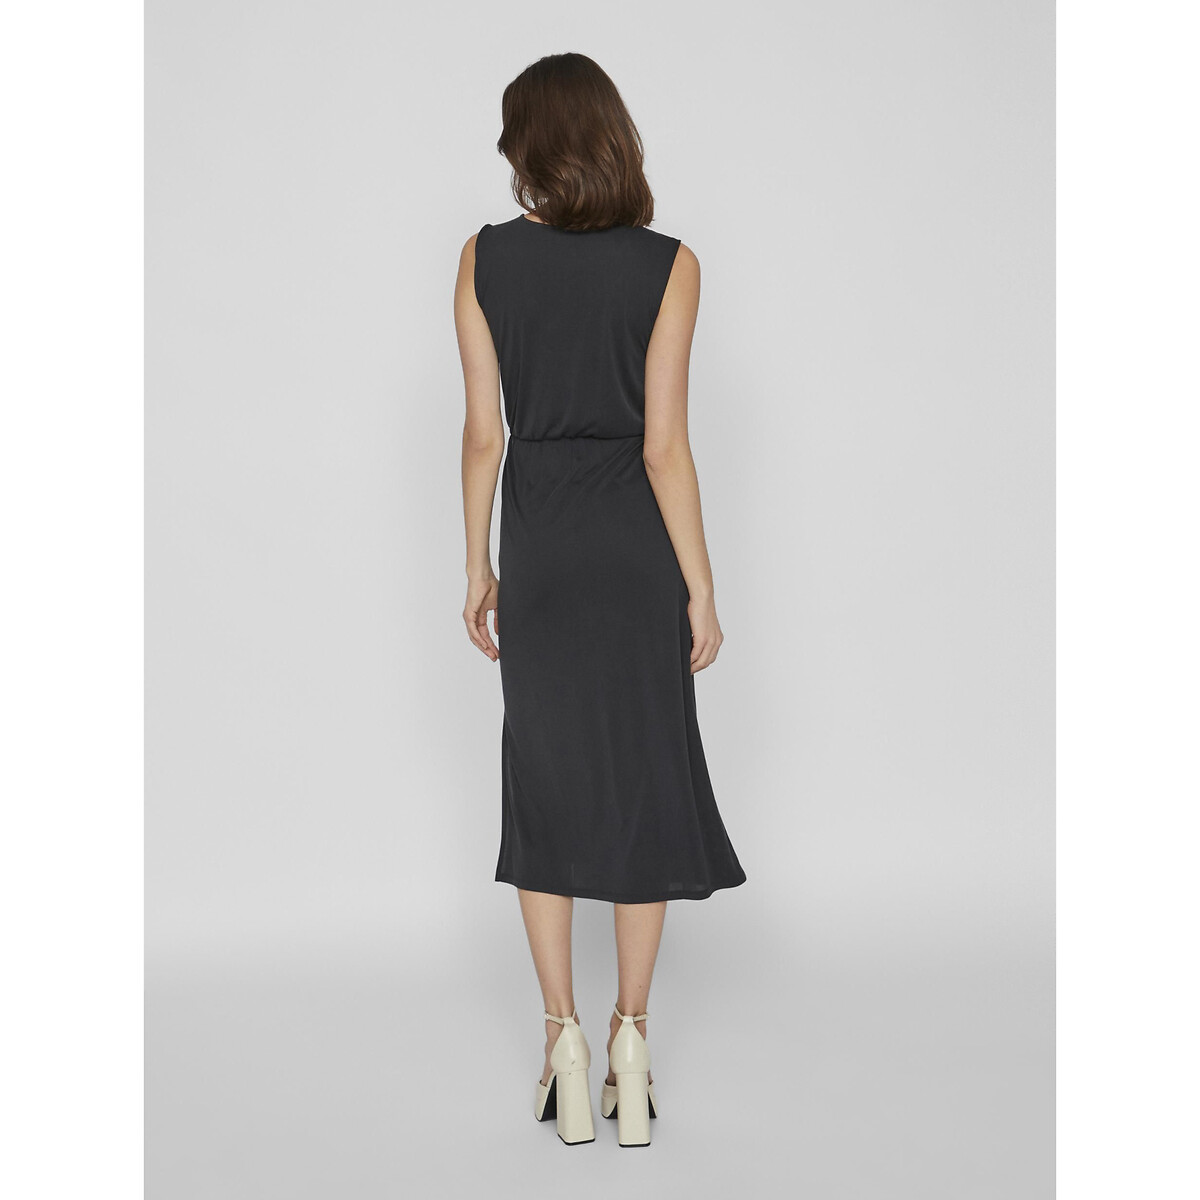 Платье-миди без рукавов  S черный LaRedoute, размер S - фото 5